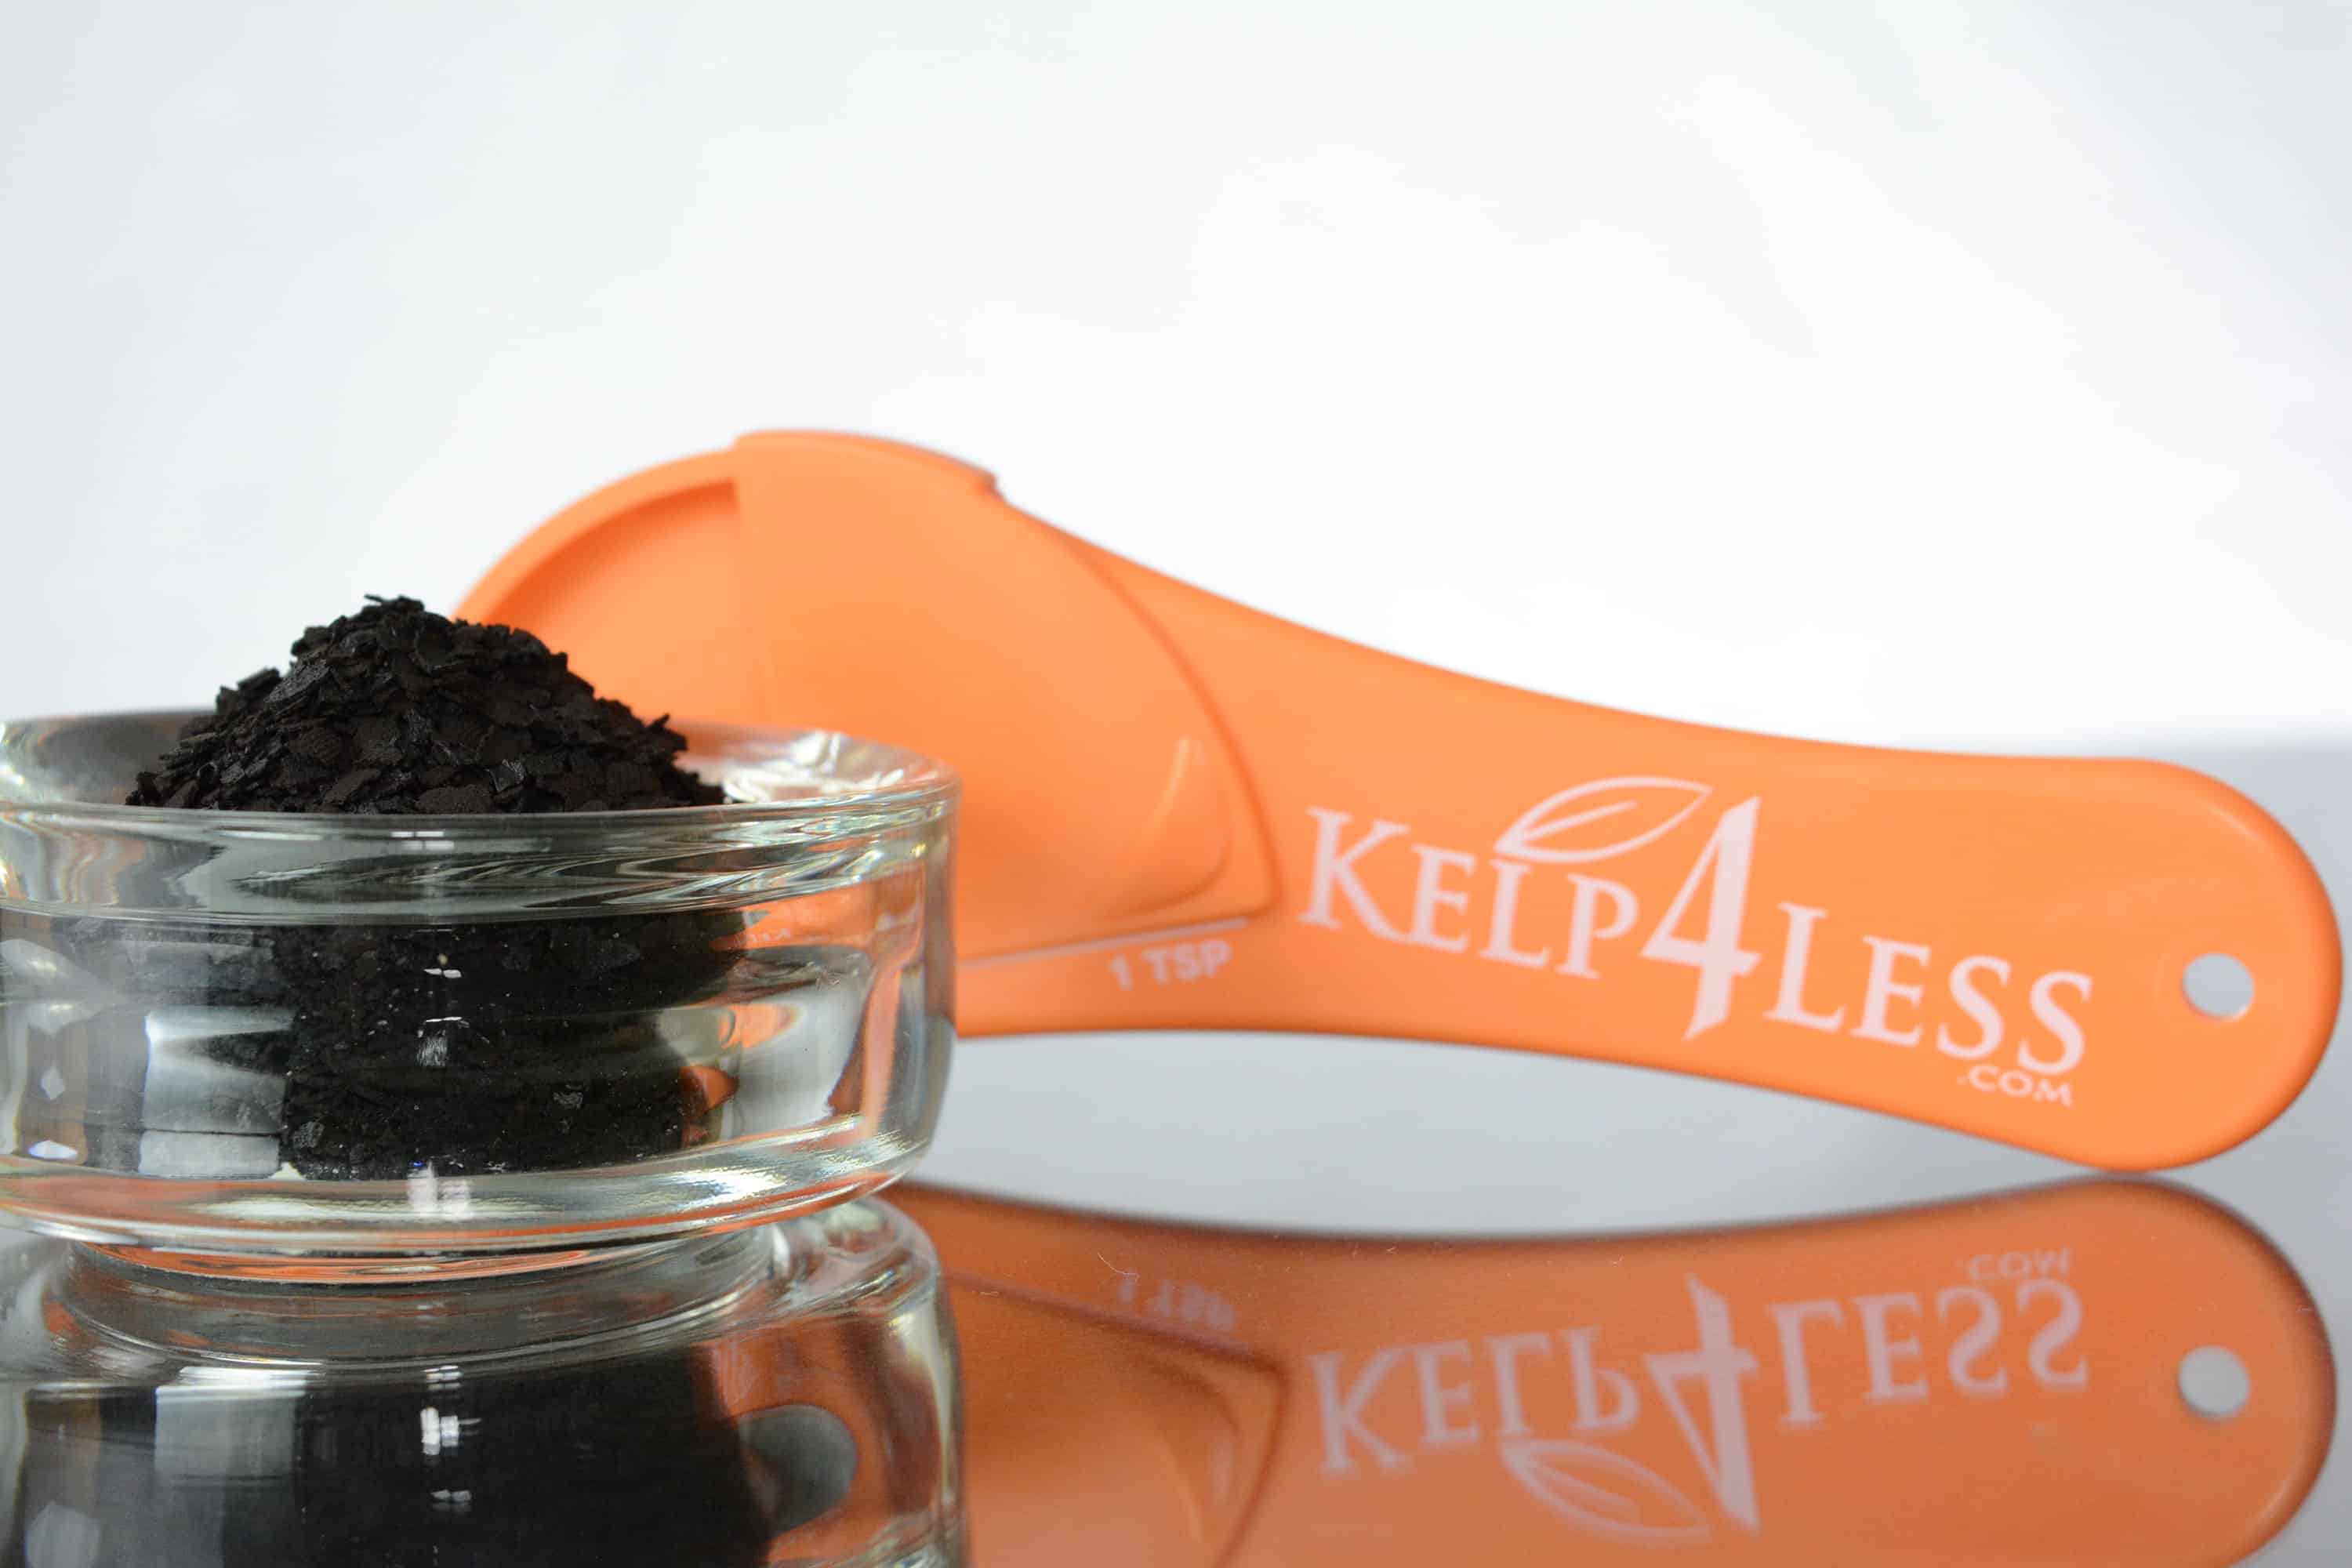 Teaspoon (Adjustable) – Kelp4less